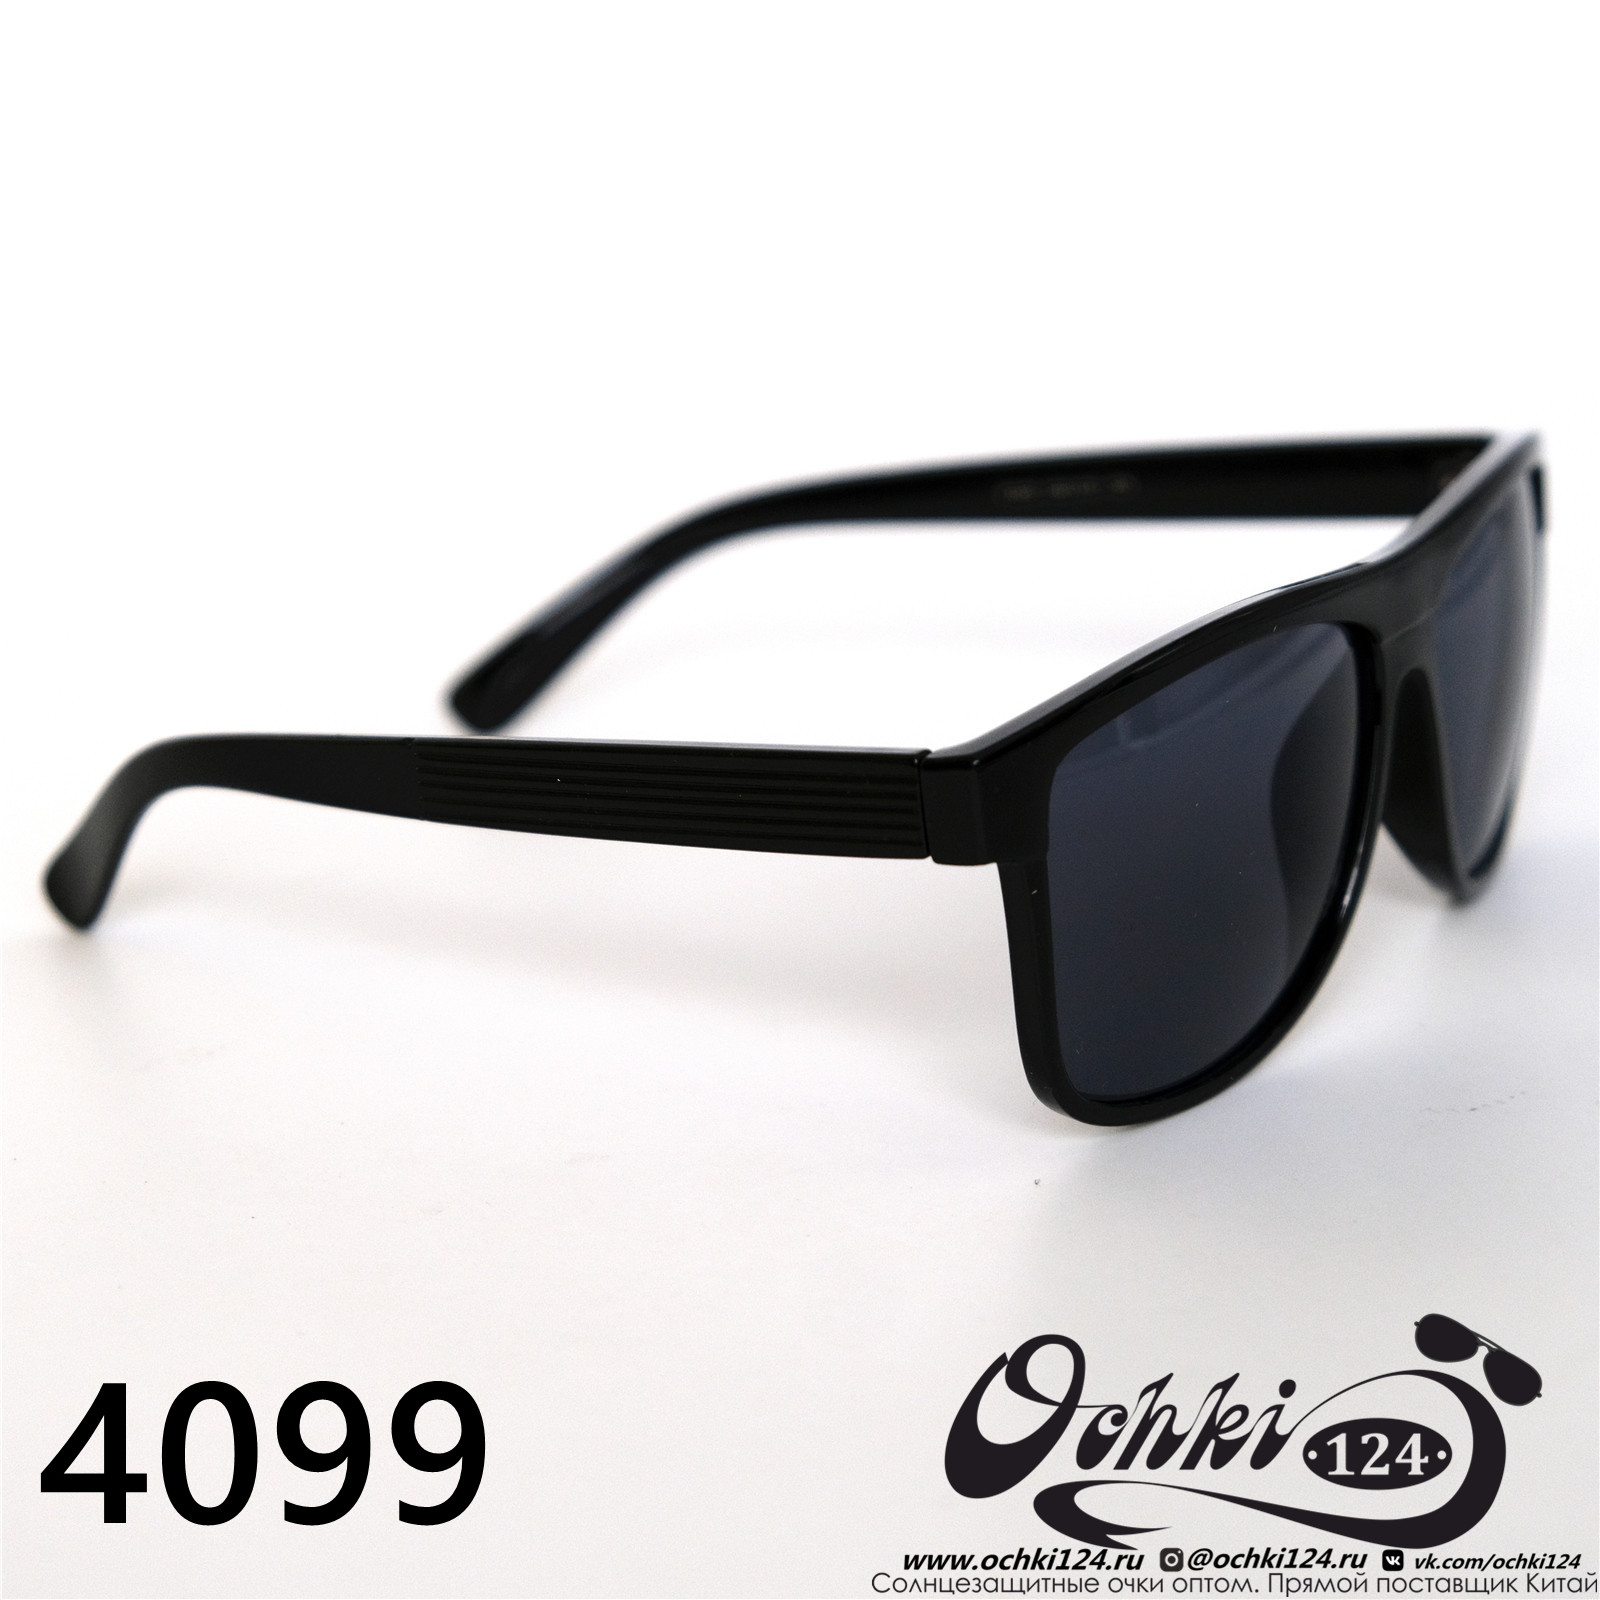  Солнцезащитные очки картинка 2022 Мужские Стандартные Materice 4099-1 